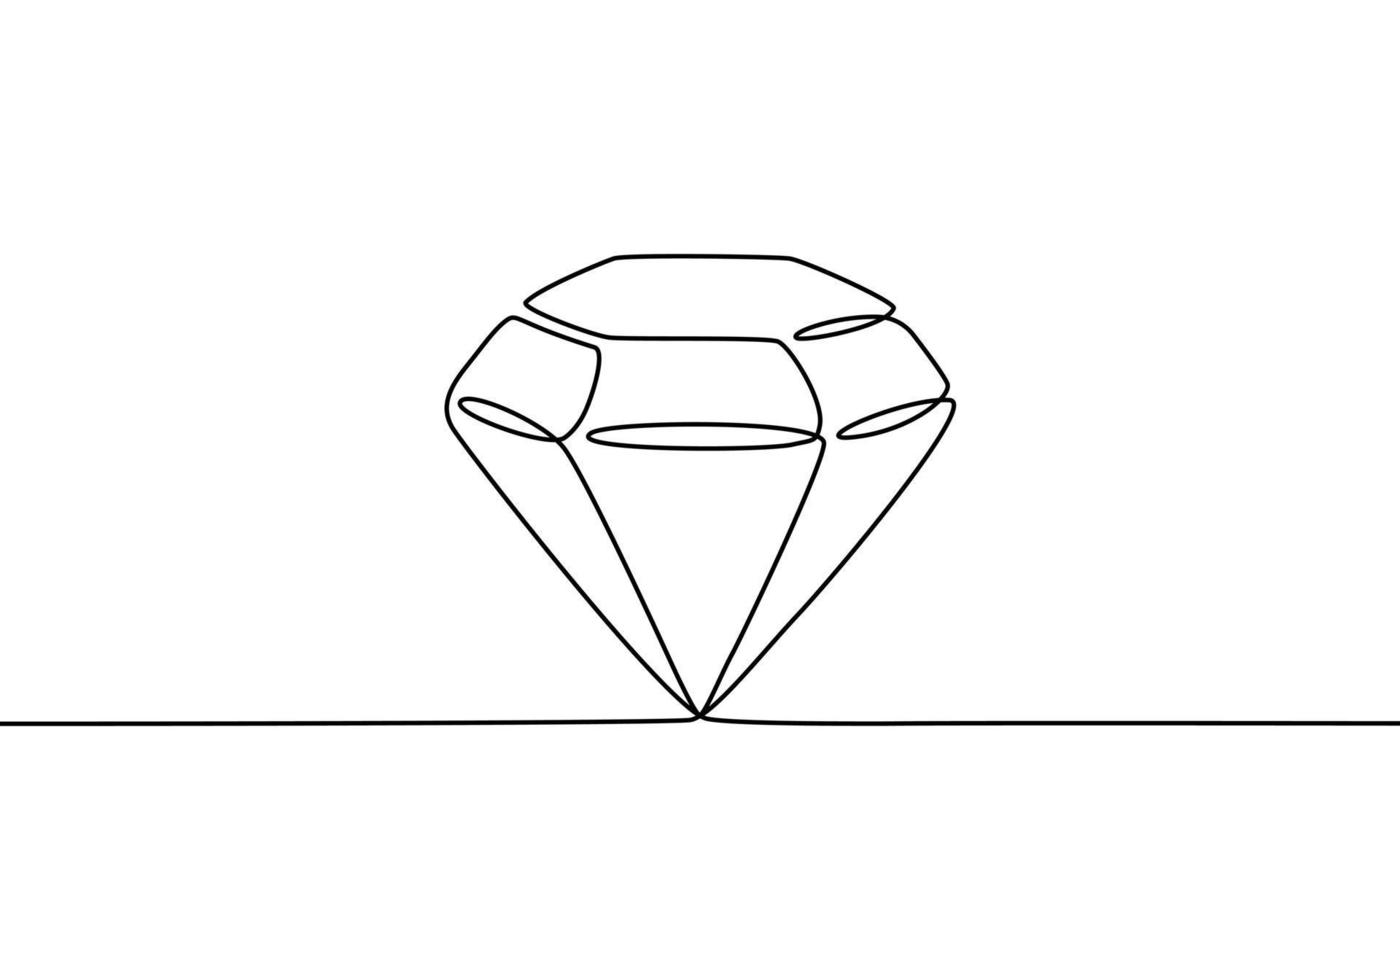 Đường nét kim cương đang trở thành xu hướng trong kiến trúc và thiết kế hiện đại. Vẽ đường nét kim cương với một đường nét sáng tạo giúp cắt giảm chi phí của bạn trong thực hiện các thiết kế dao động. Hãy xem hình ảnh liên quan để khám phá thú vị trong nét vẽ của kim cương.